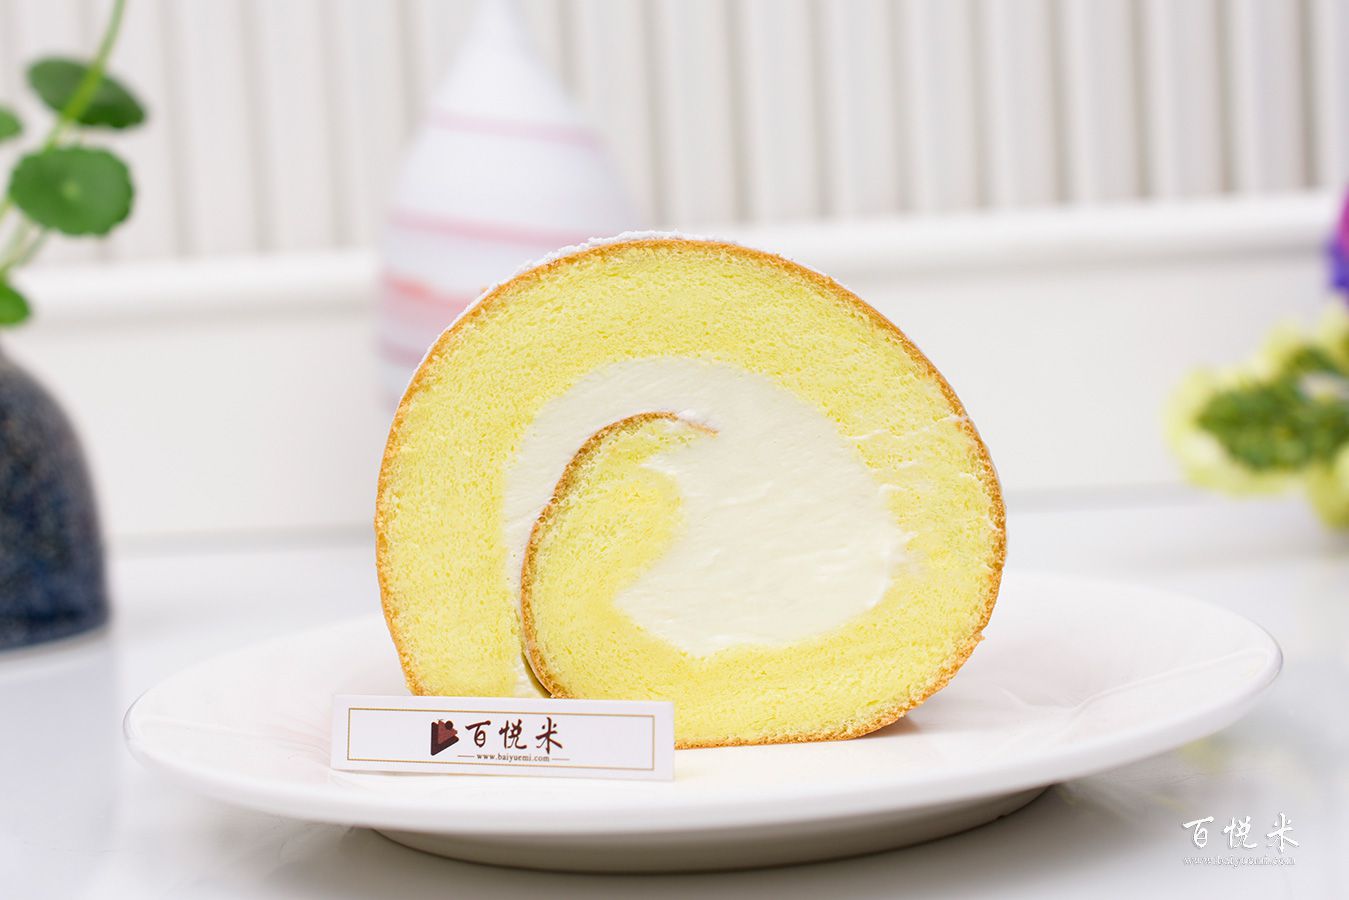 原味蛋糕卷高清图片大全【蛋糕图片】_92